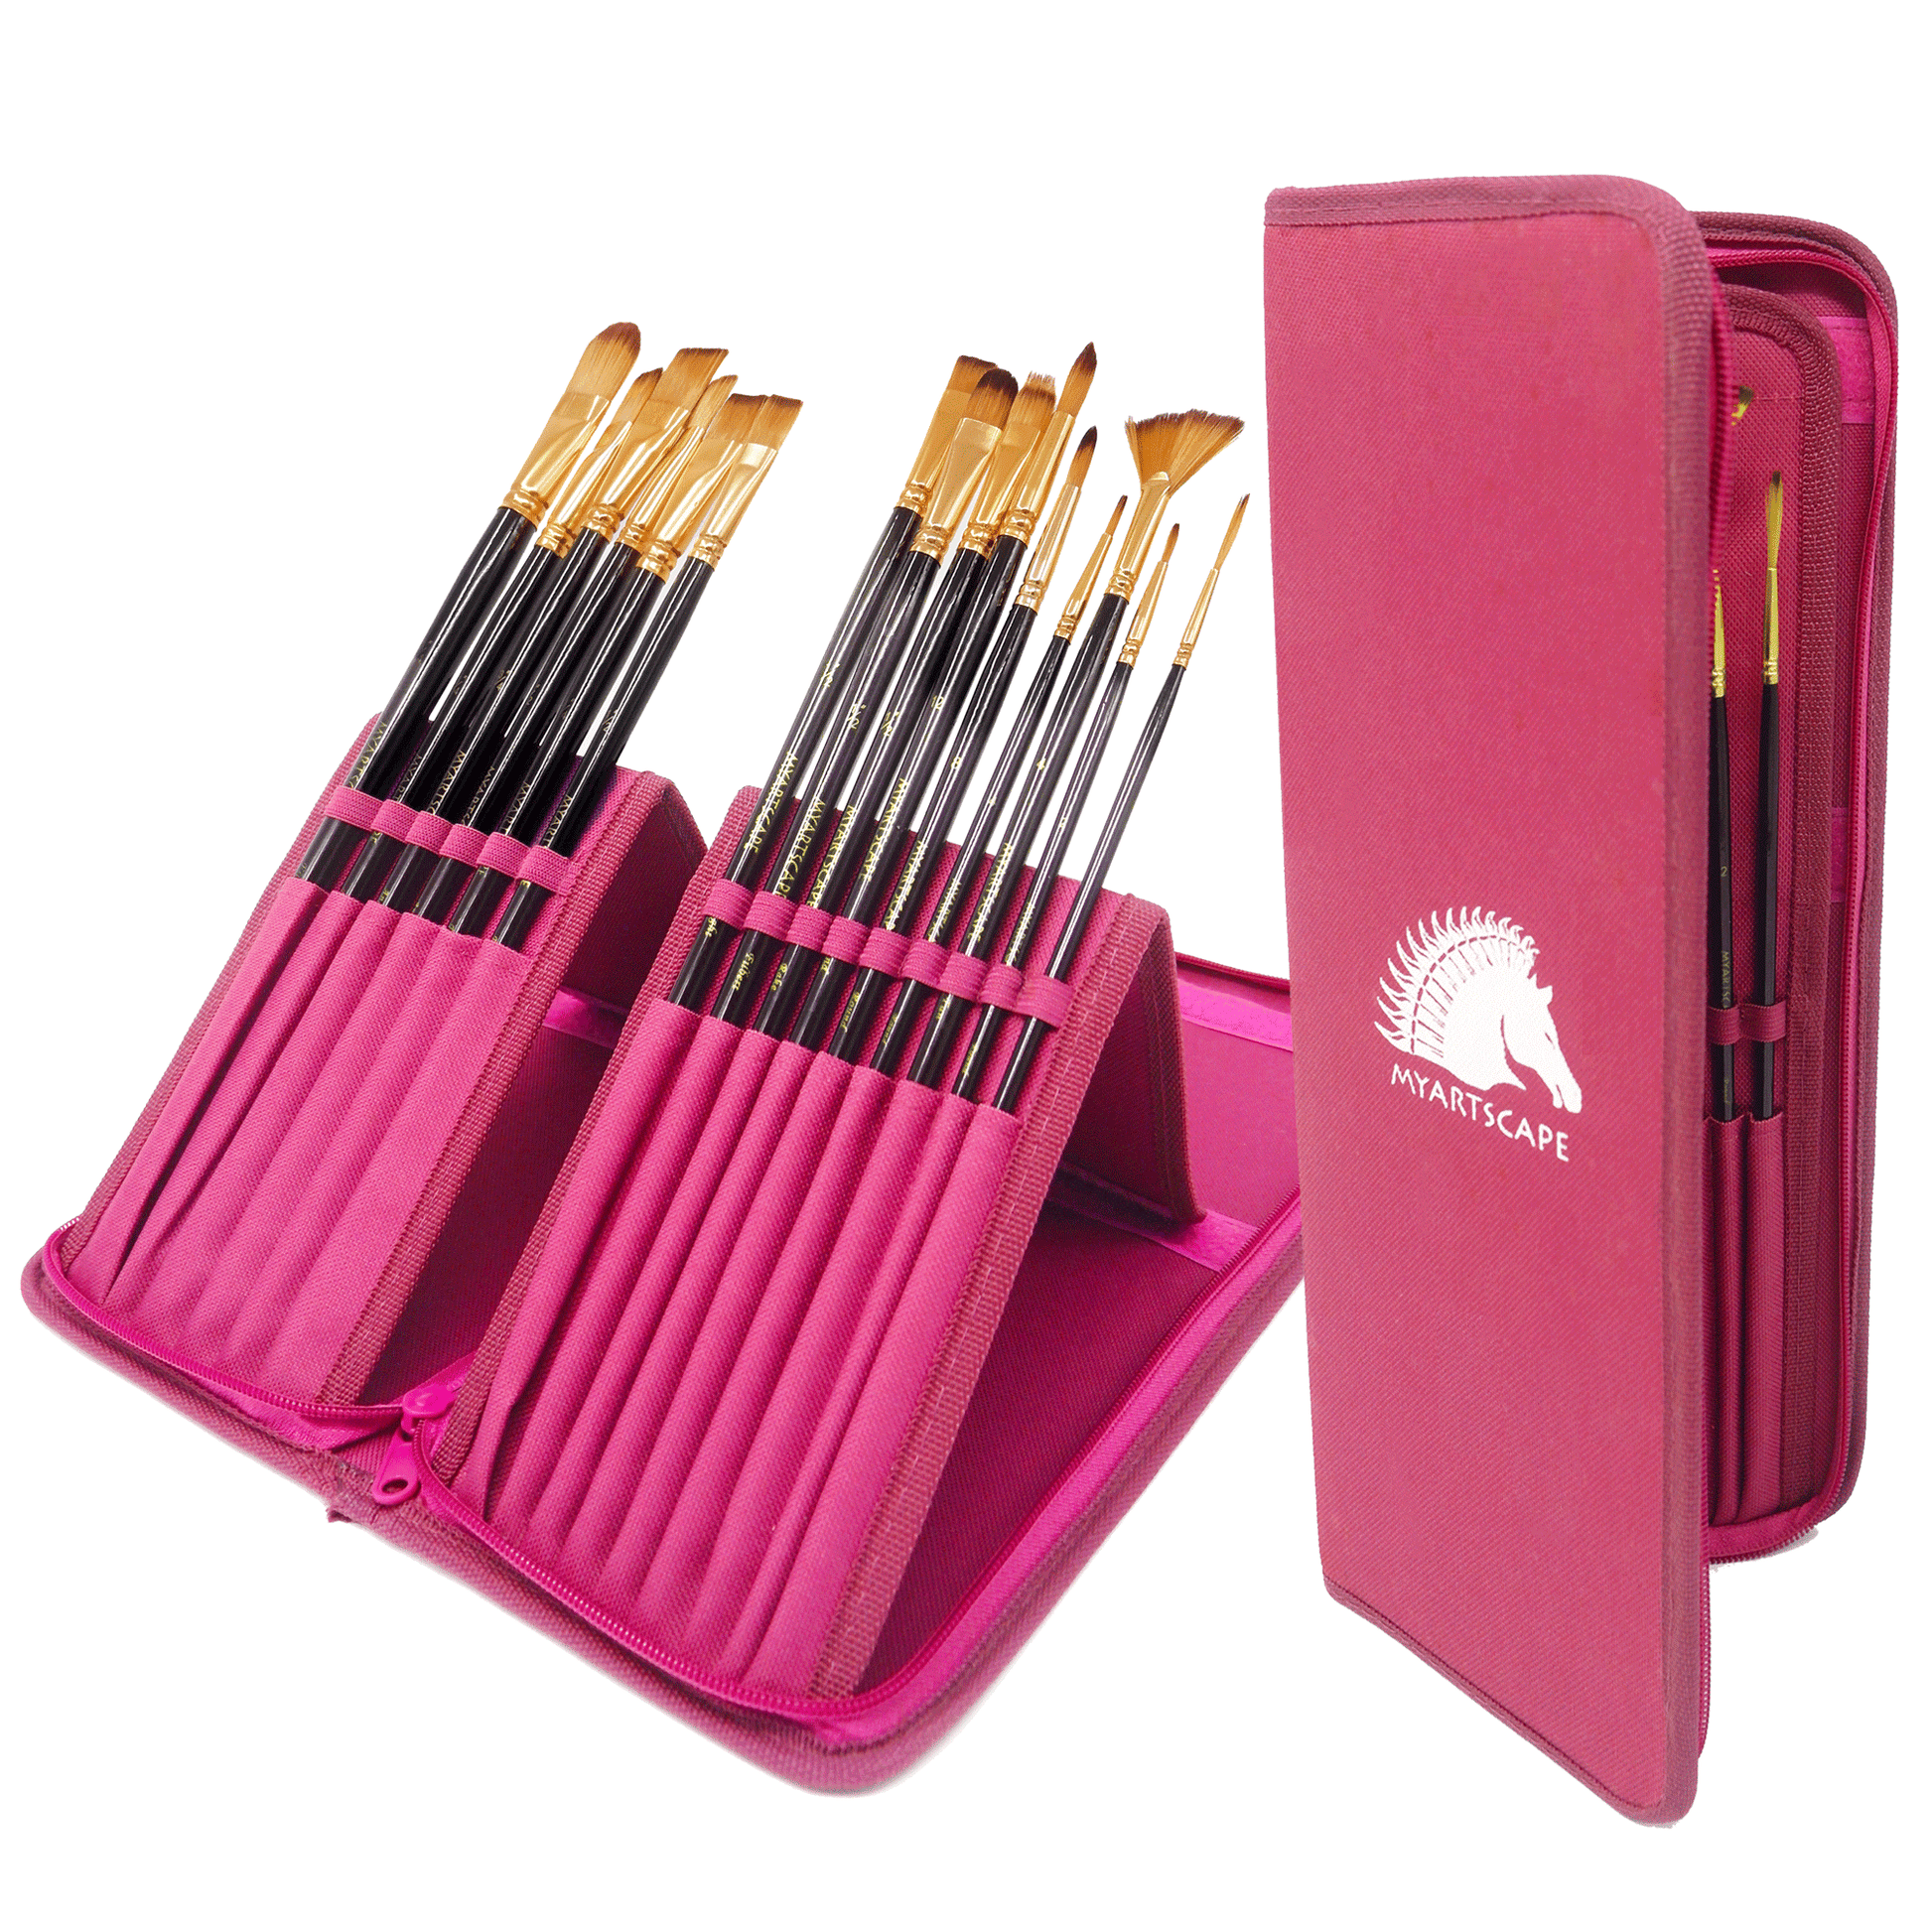 Miniature Paint Brush Set, Set of 12 Art Brushes – MyArtscape